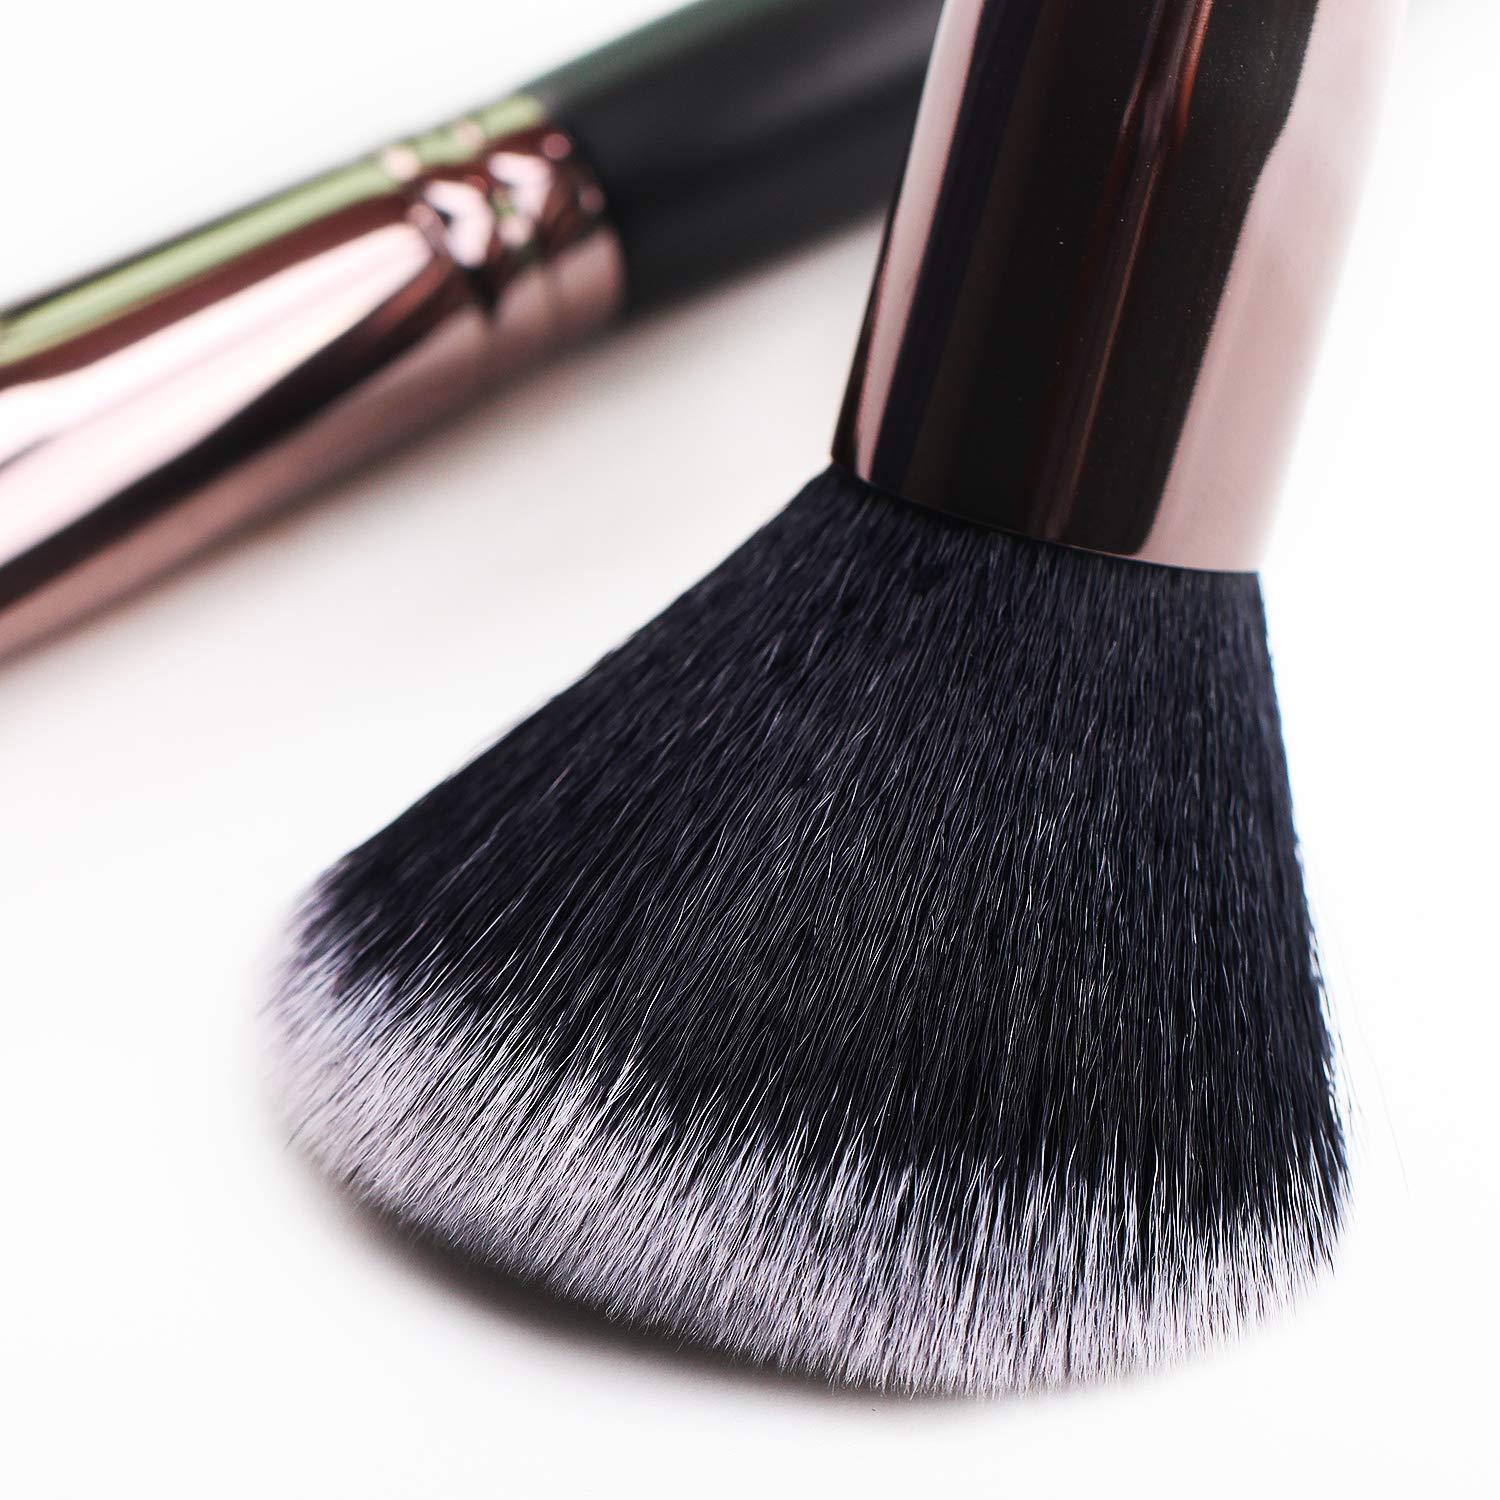 Refand Makeup Brushes 29 Piece Professional Makeup Brush Set Premium Kabuki Foundation Blending Brush Face Powder Blush Concealers Eye Shadows Make U